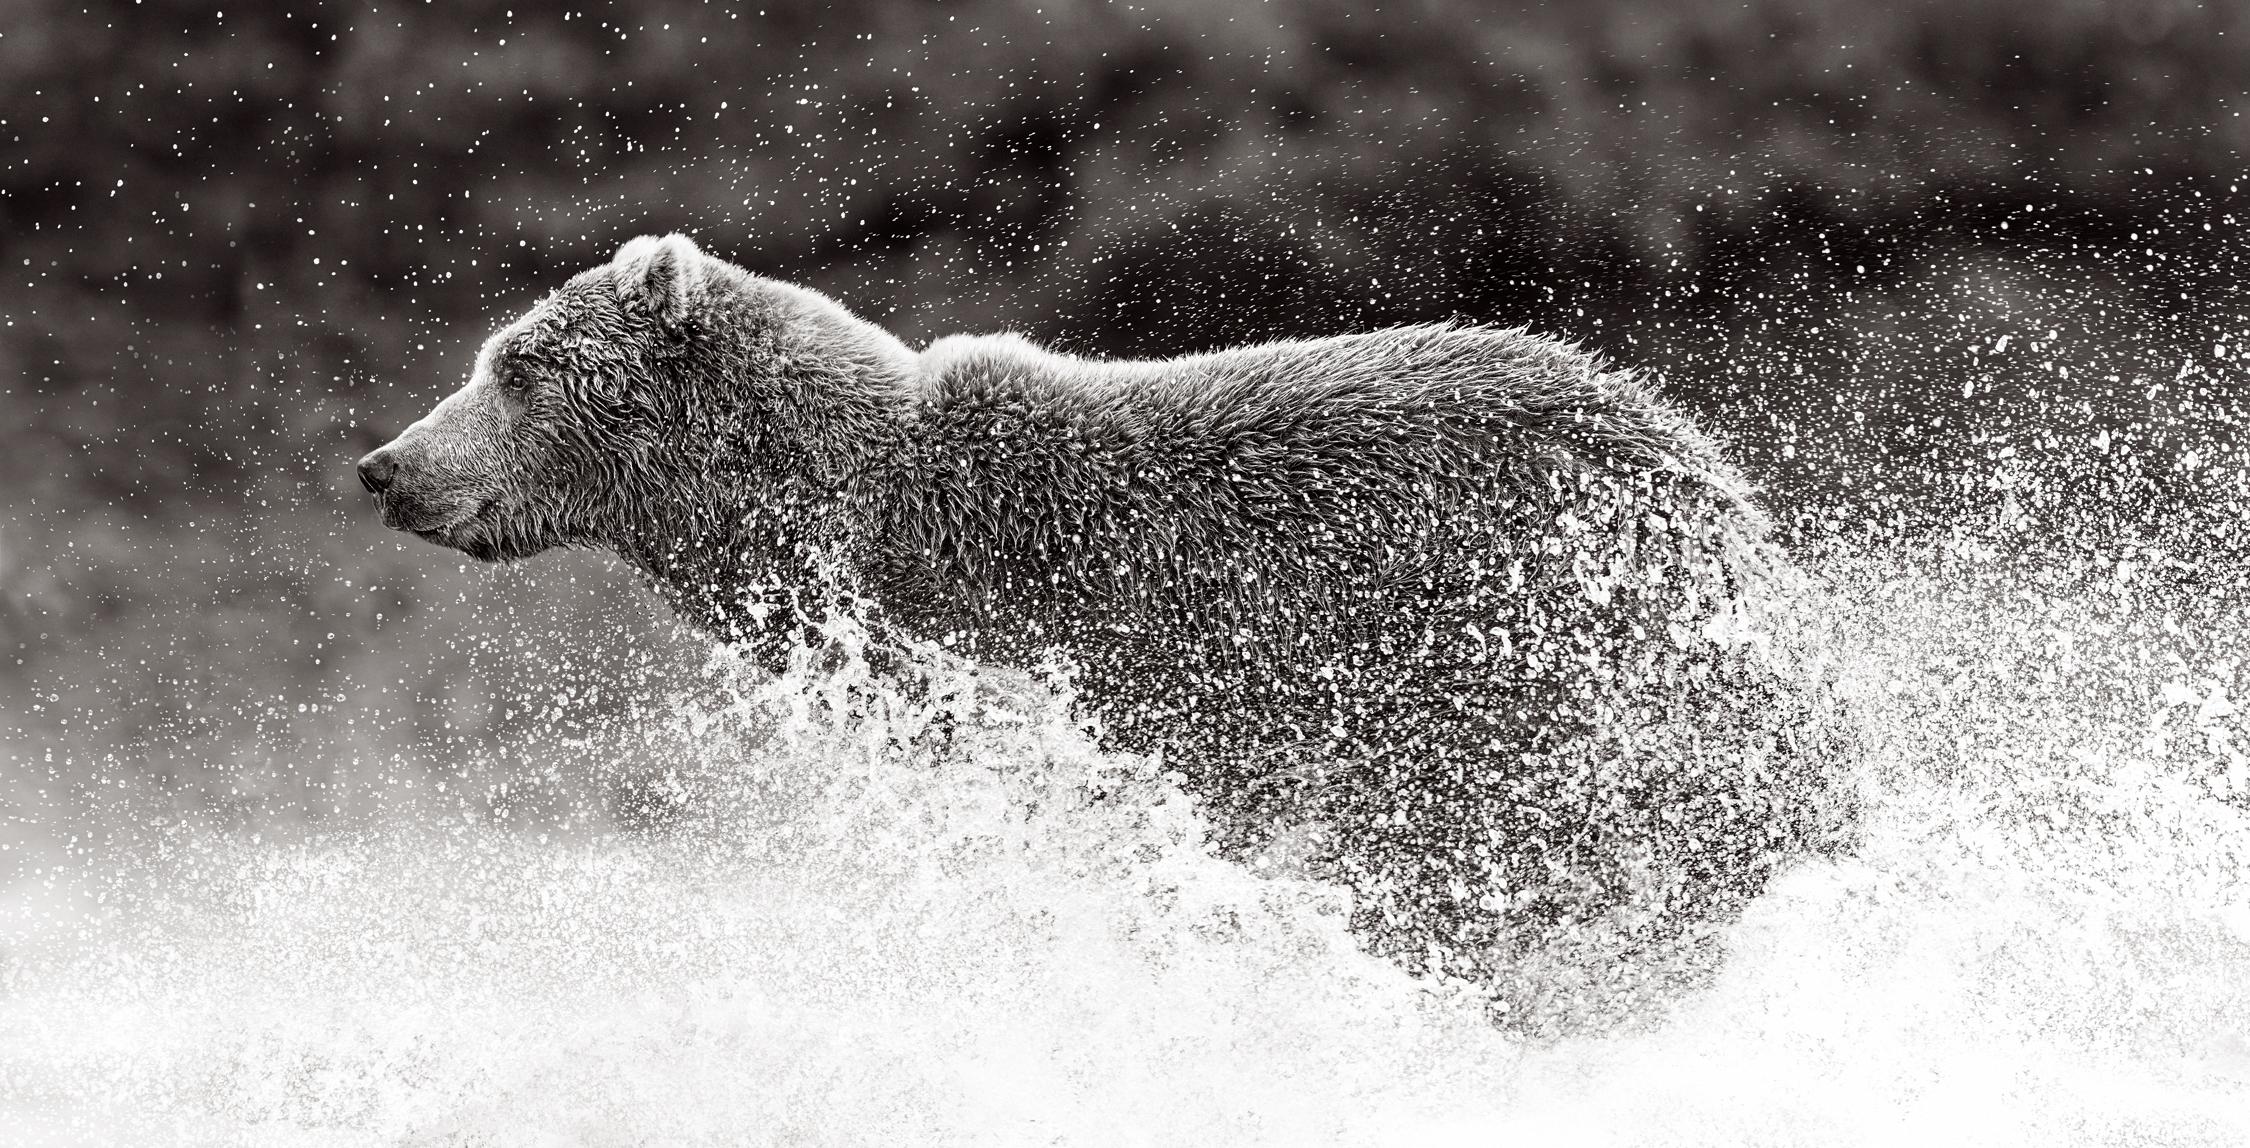 Black and White Photograph Drew Doggett - L'ours courant à pleine vitesse à travers le Creek